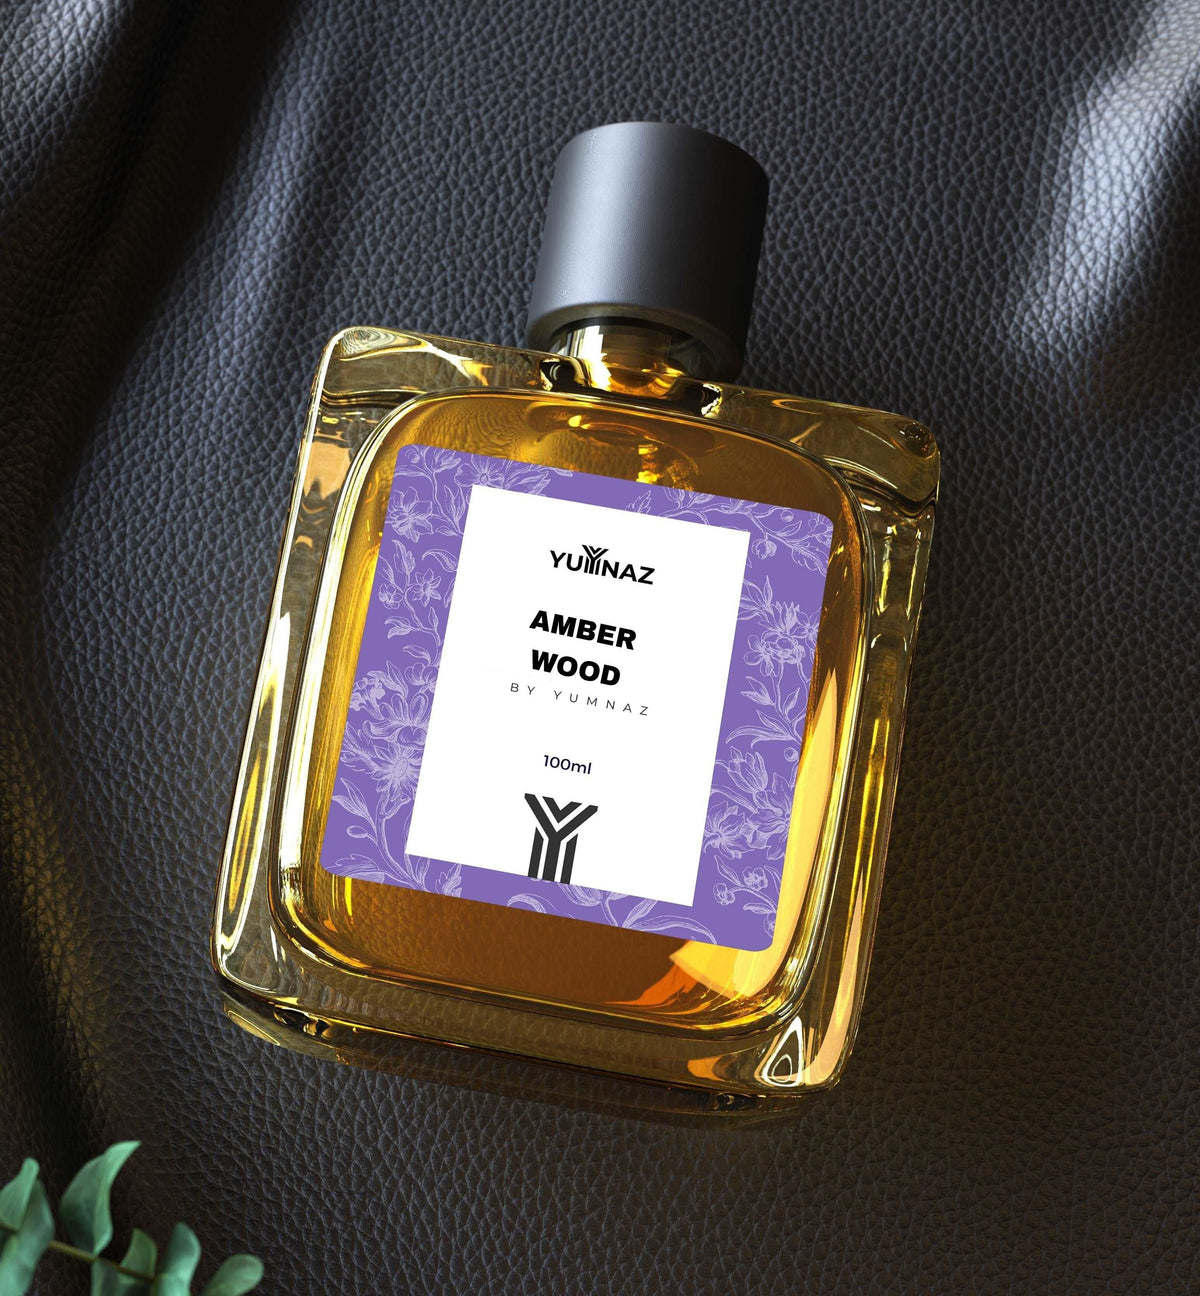 Amber Wood Perfume Price in Pakistan